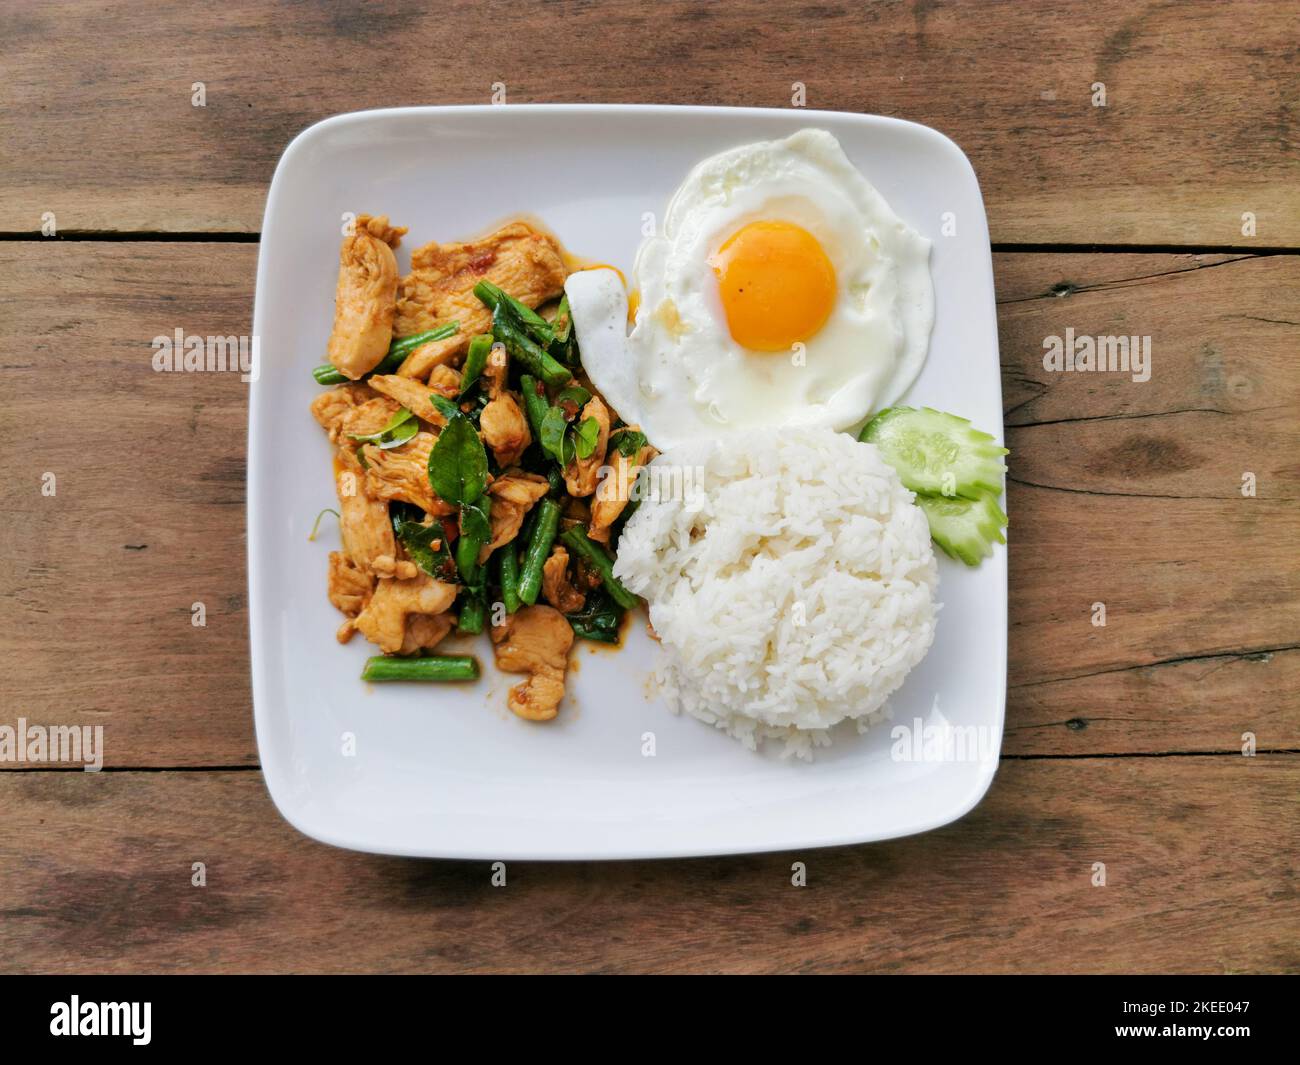 Fettete il gaeng moo o mescolate il maiale al curry rosso fritto con riso bianco su un piatto bianco con fondo in legno. Cibo di strada tailandese in Thailandia. Foto Stock